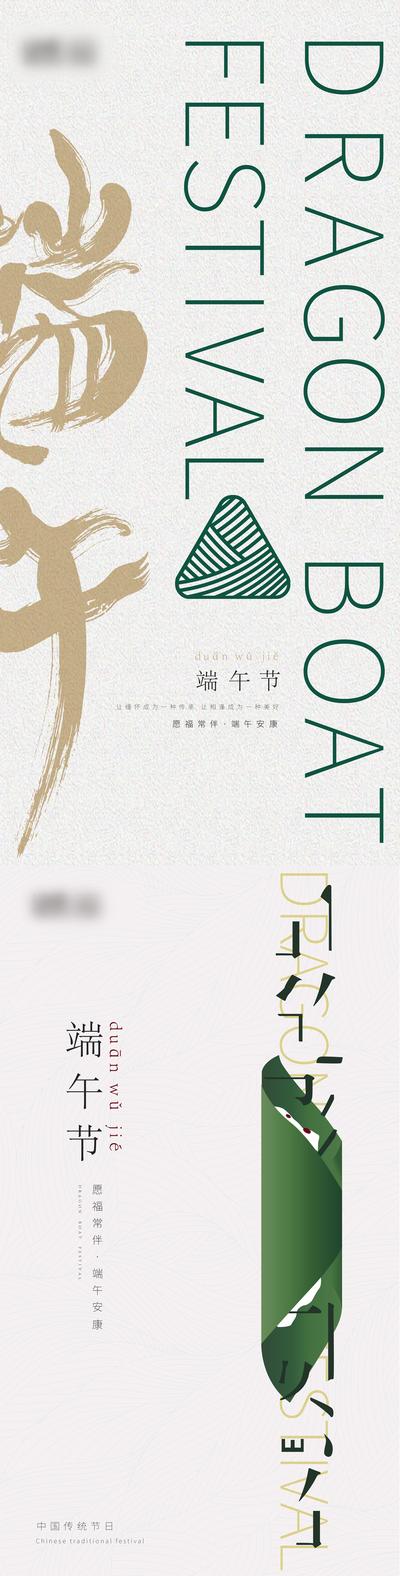 南门网 海报 端午节 中国传统节日 粽子 文字